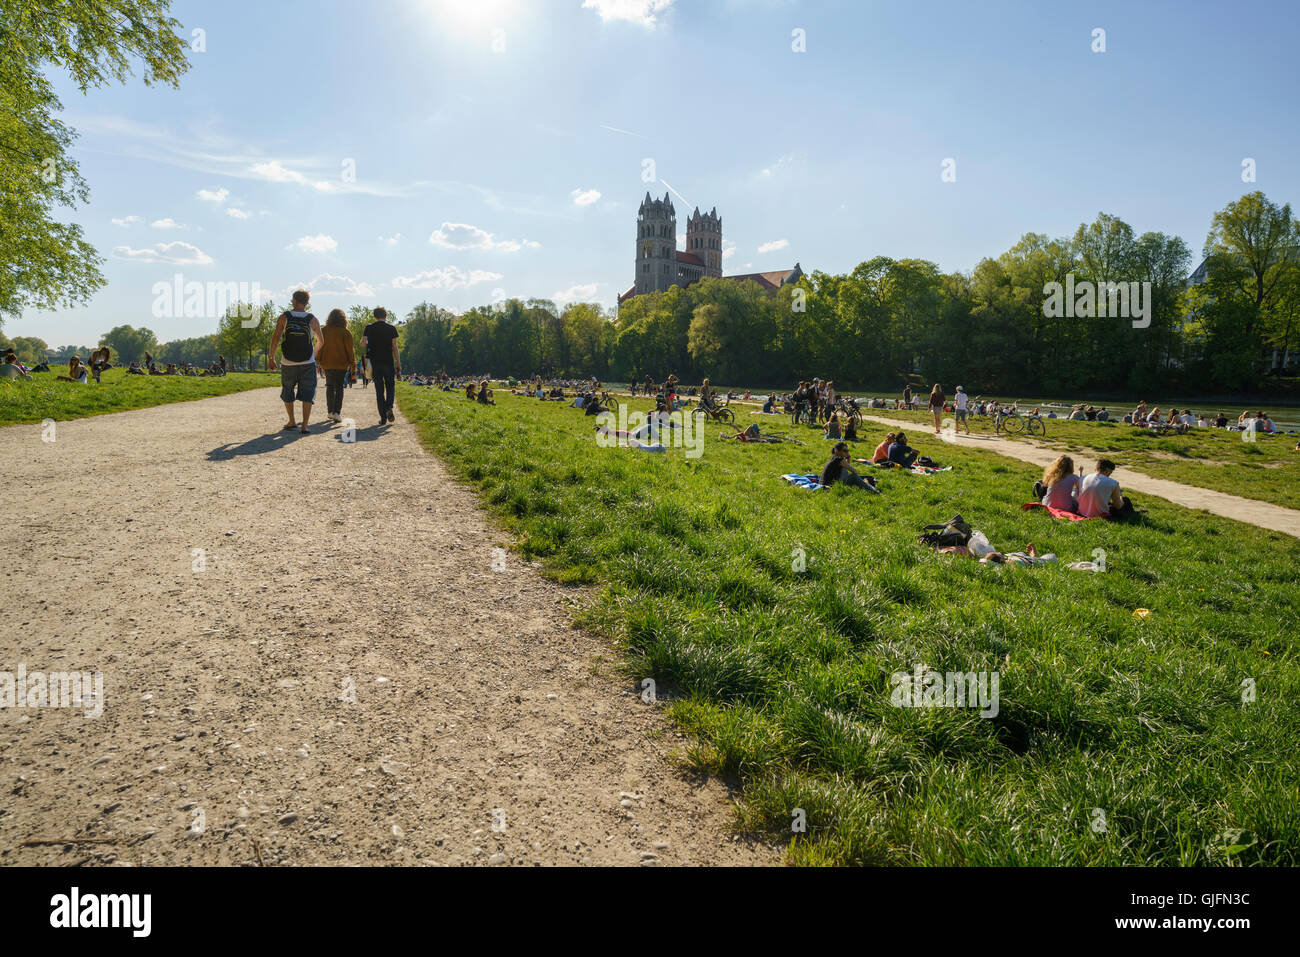 Ein arbeitsreicher Sommertag an den Ufern der Isar in München. Menschen-Picknick, Schwimmen und Spaziergang. Stockfoto